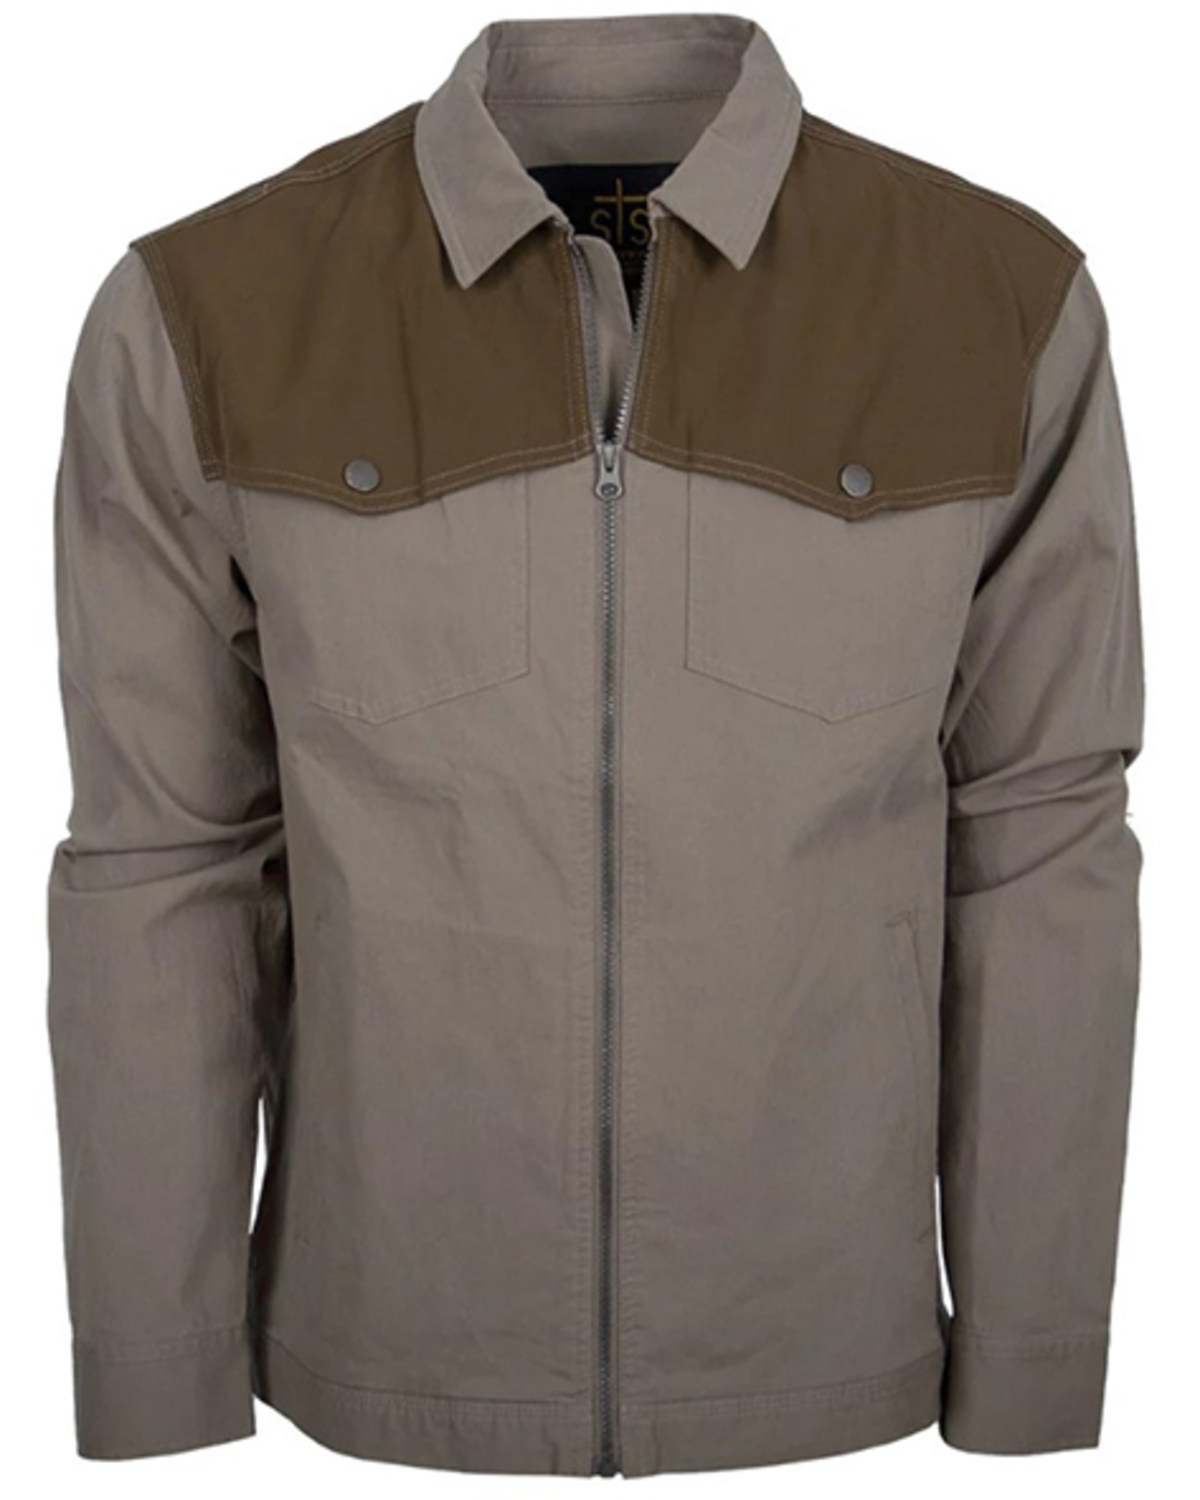 STS Ranchwear By Carroll Men's Hinsdale Zip Jacket